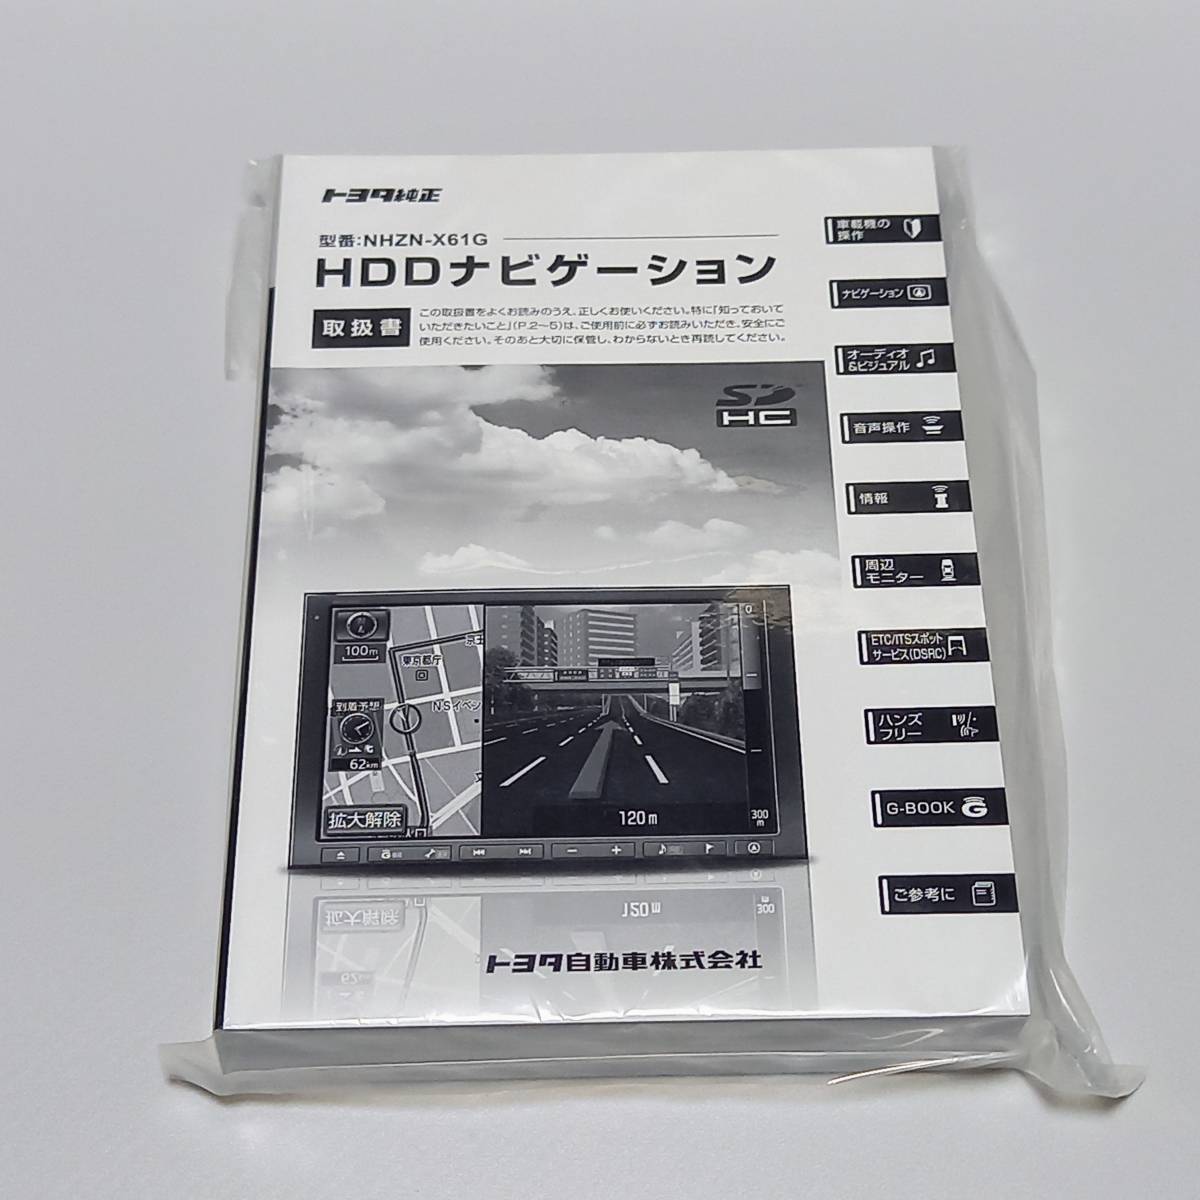 【新品】NHZN-X61G HDDナビゲーション 取扱書 【トヨタ純正ナビ 取扱説明書】_画像1